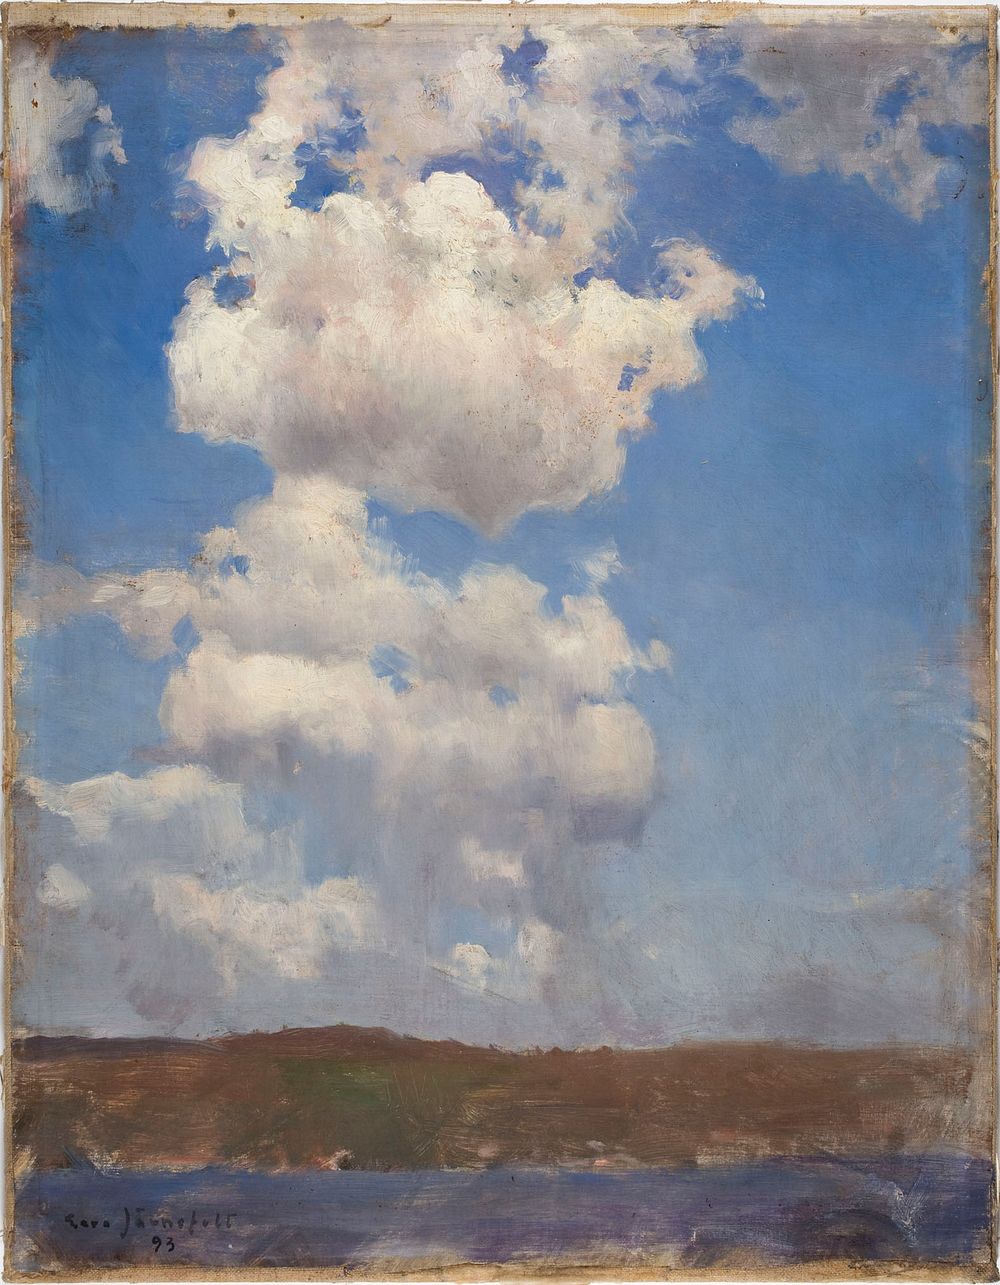 Cloud study, 1893, Eero Järnefelt